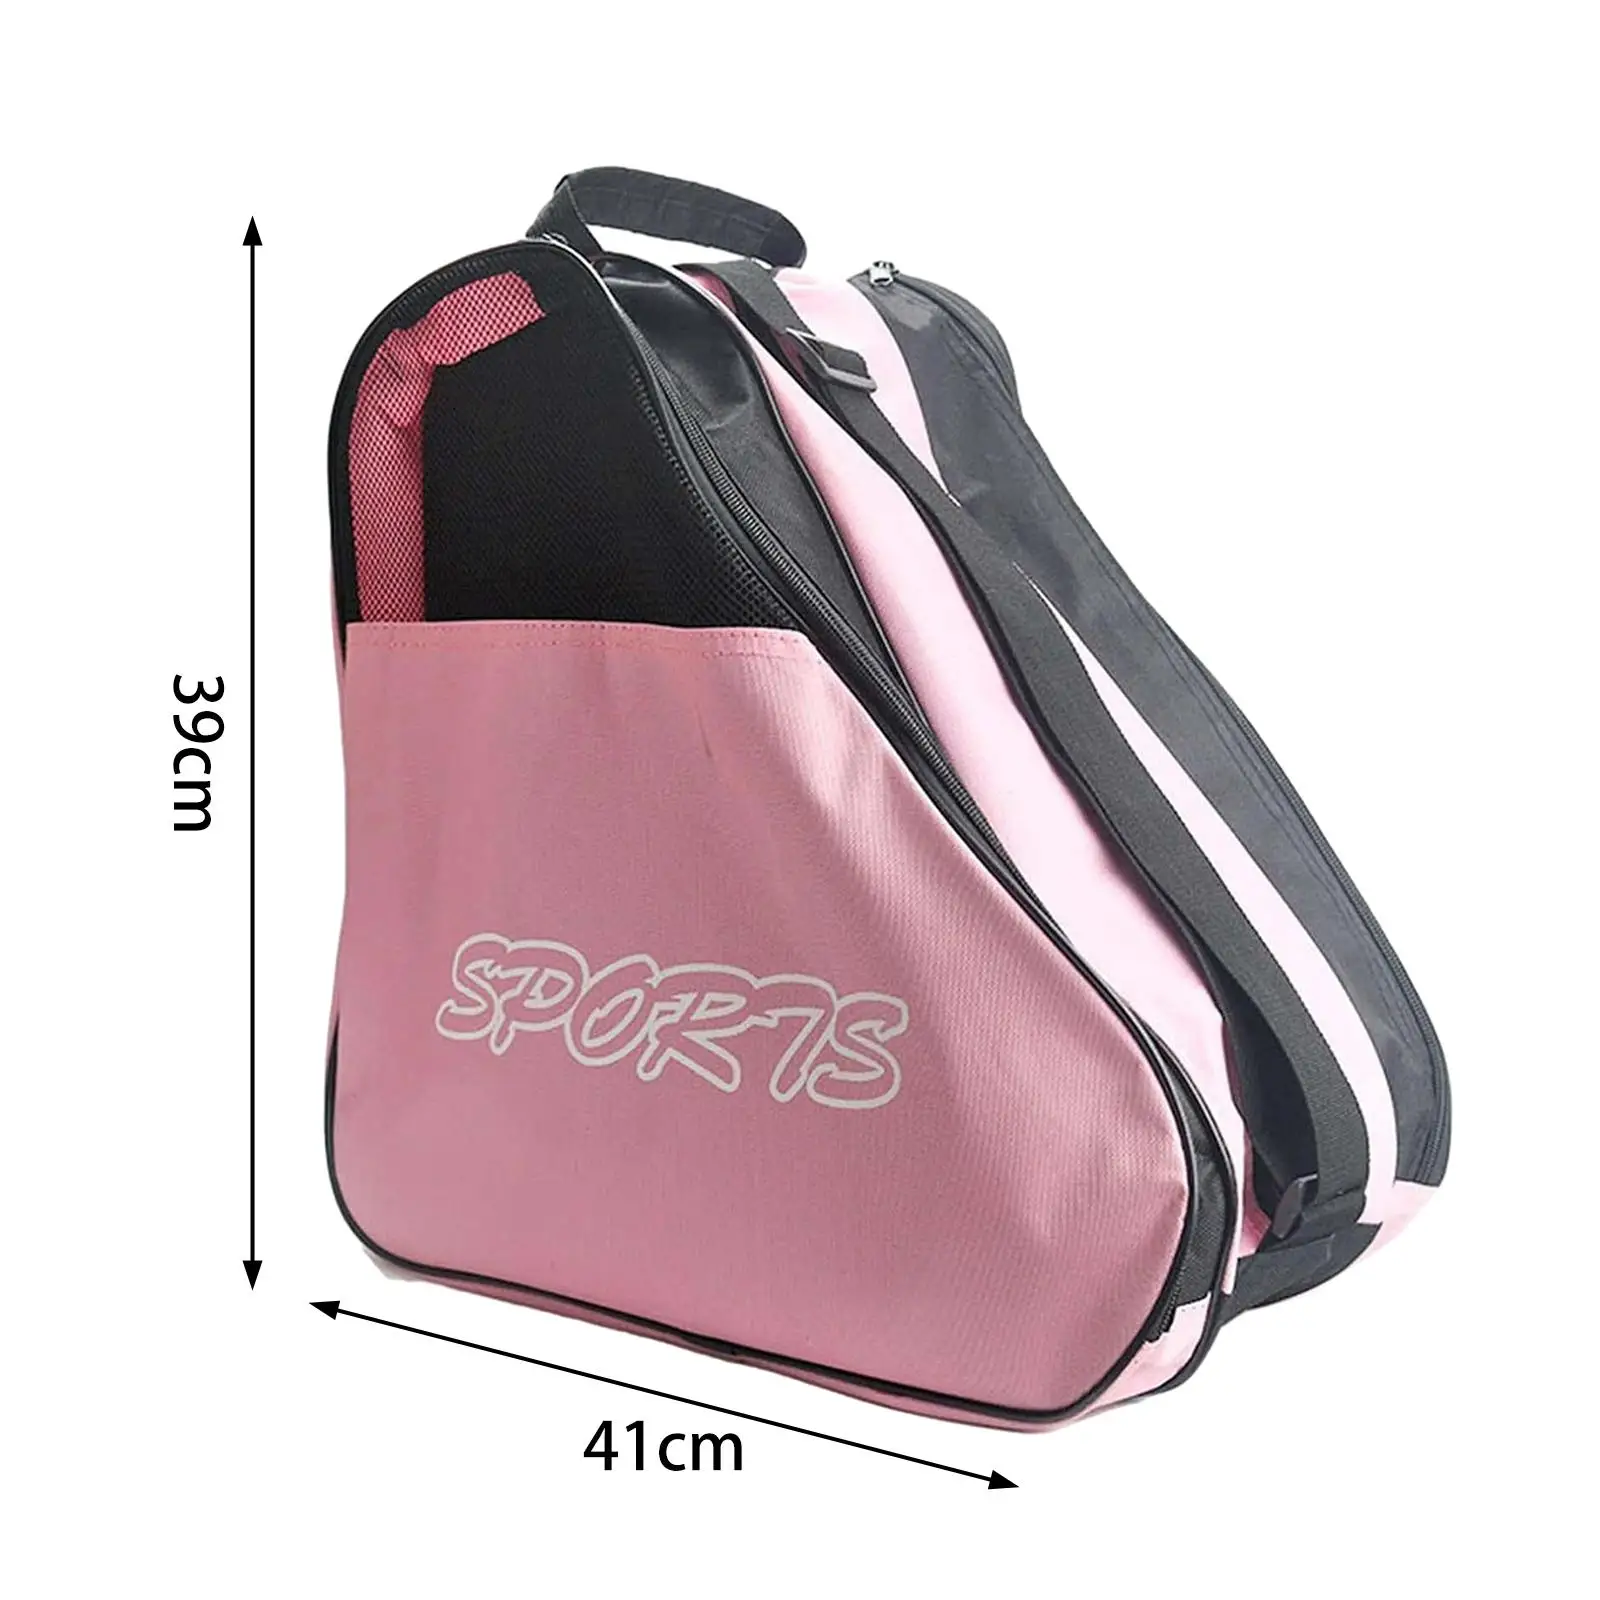 Roller Skates Bag Large Capacity Adjustable Shoulder Strap Breathable Carrier Skating Shoes Bag for Boys Kids Men Women Girls